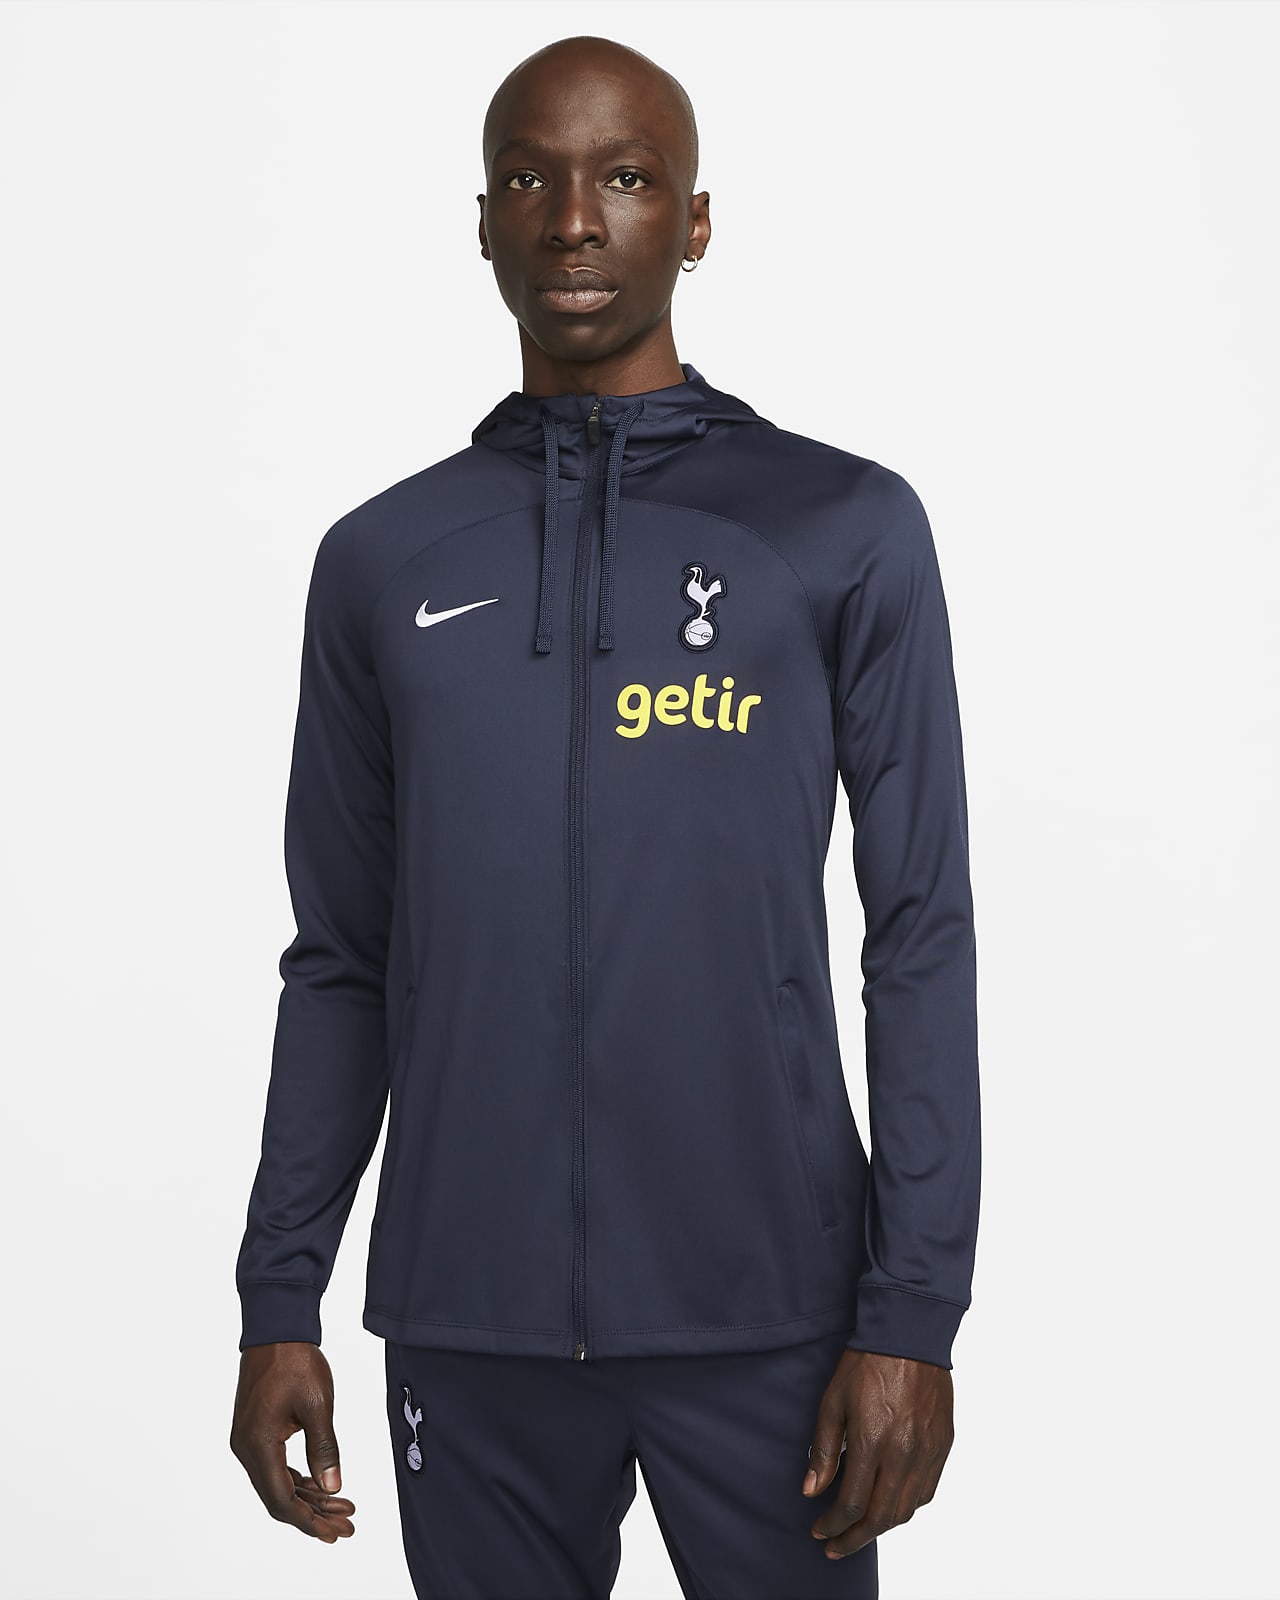 Tottenham Hotspur Strike Nike Dri-FIT fotballtreningsjakke med hette til herre